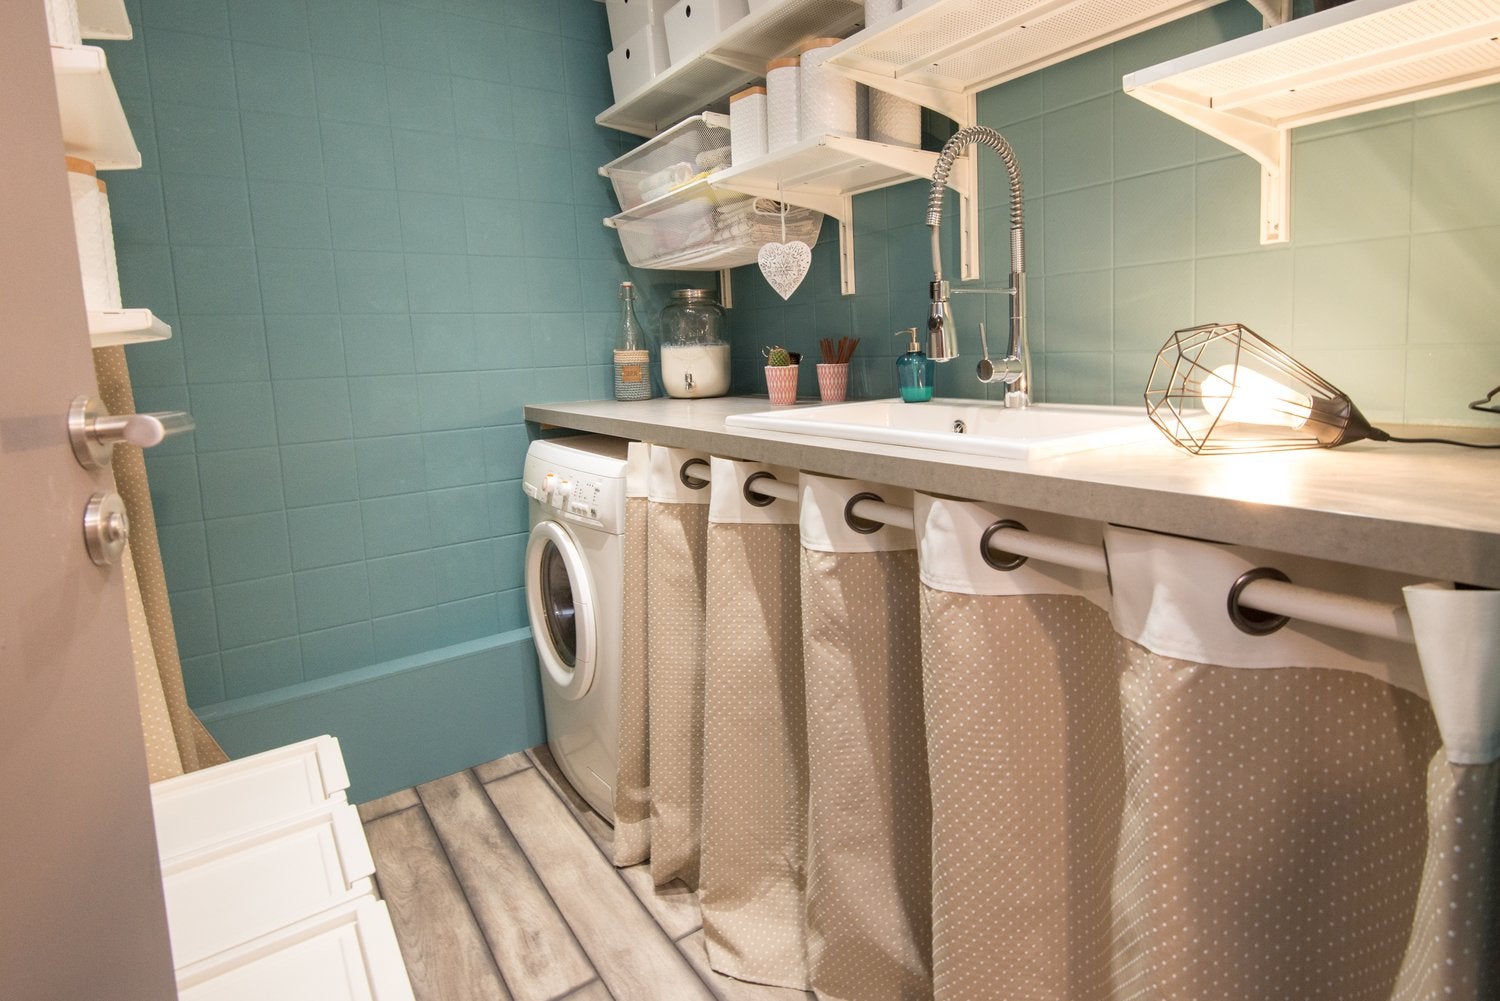 49 ingeniosos ejemplos de lavanderías que le gustaría tener en casa.